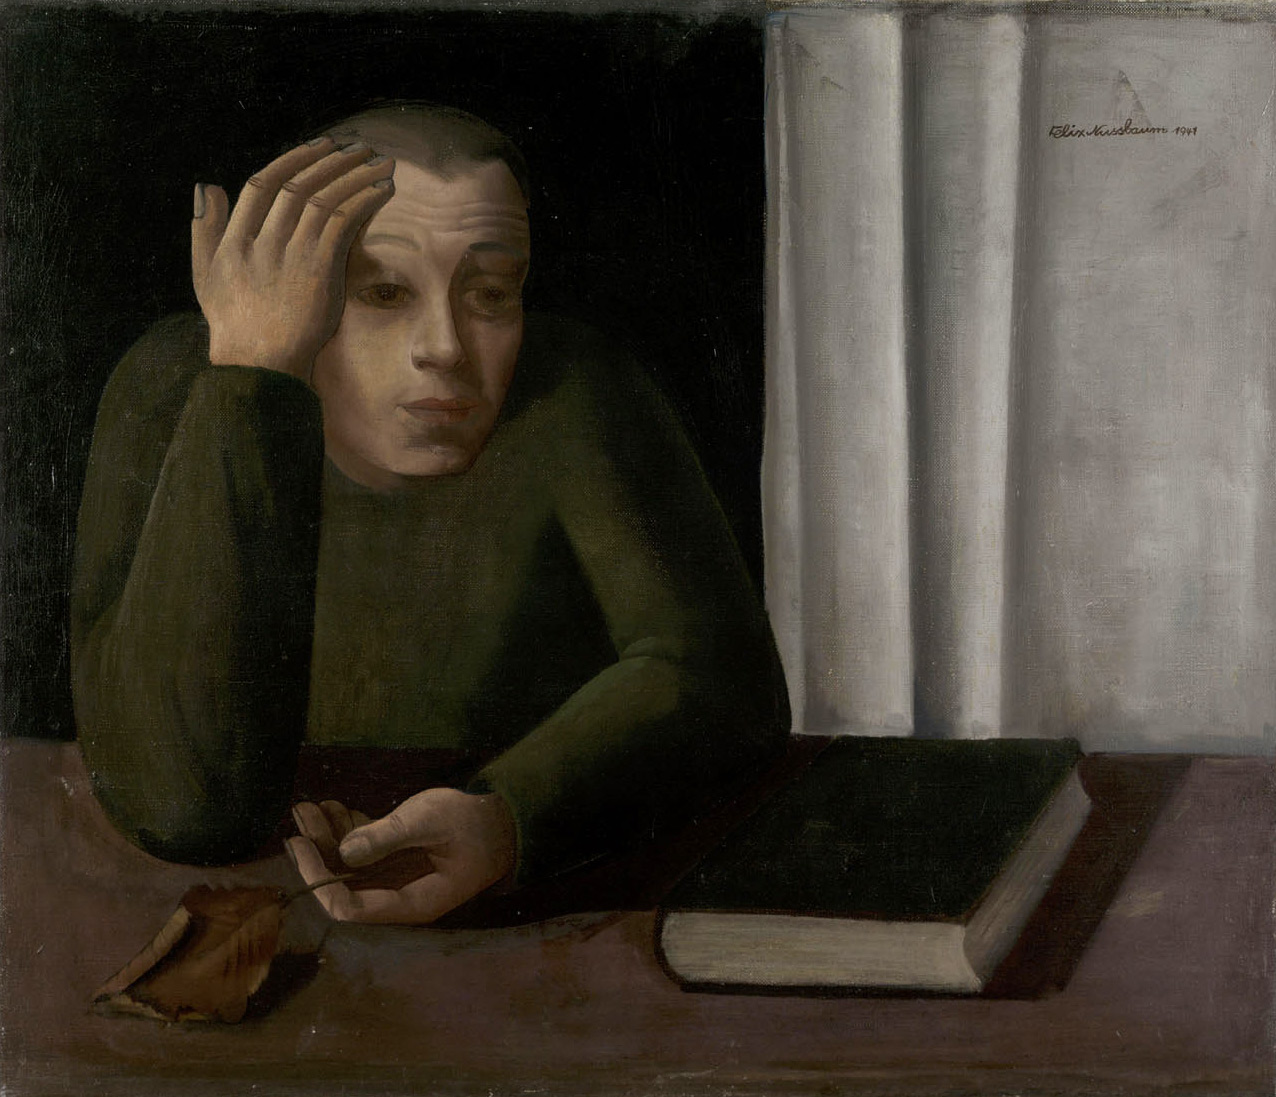 Феликс Нуссбаум. "Портрет неизвестного, 1941"